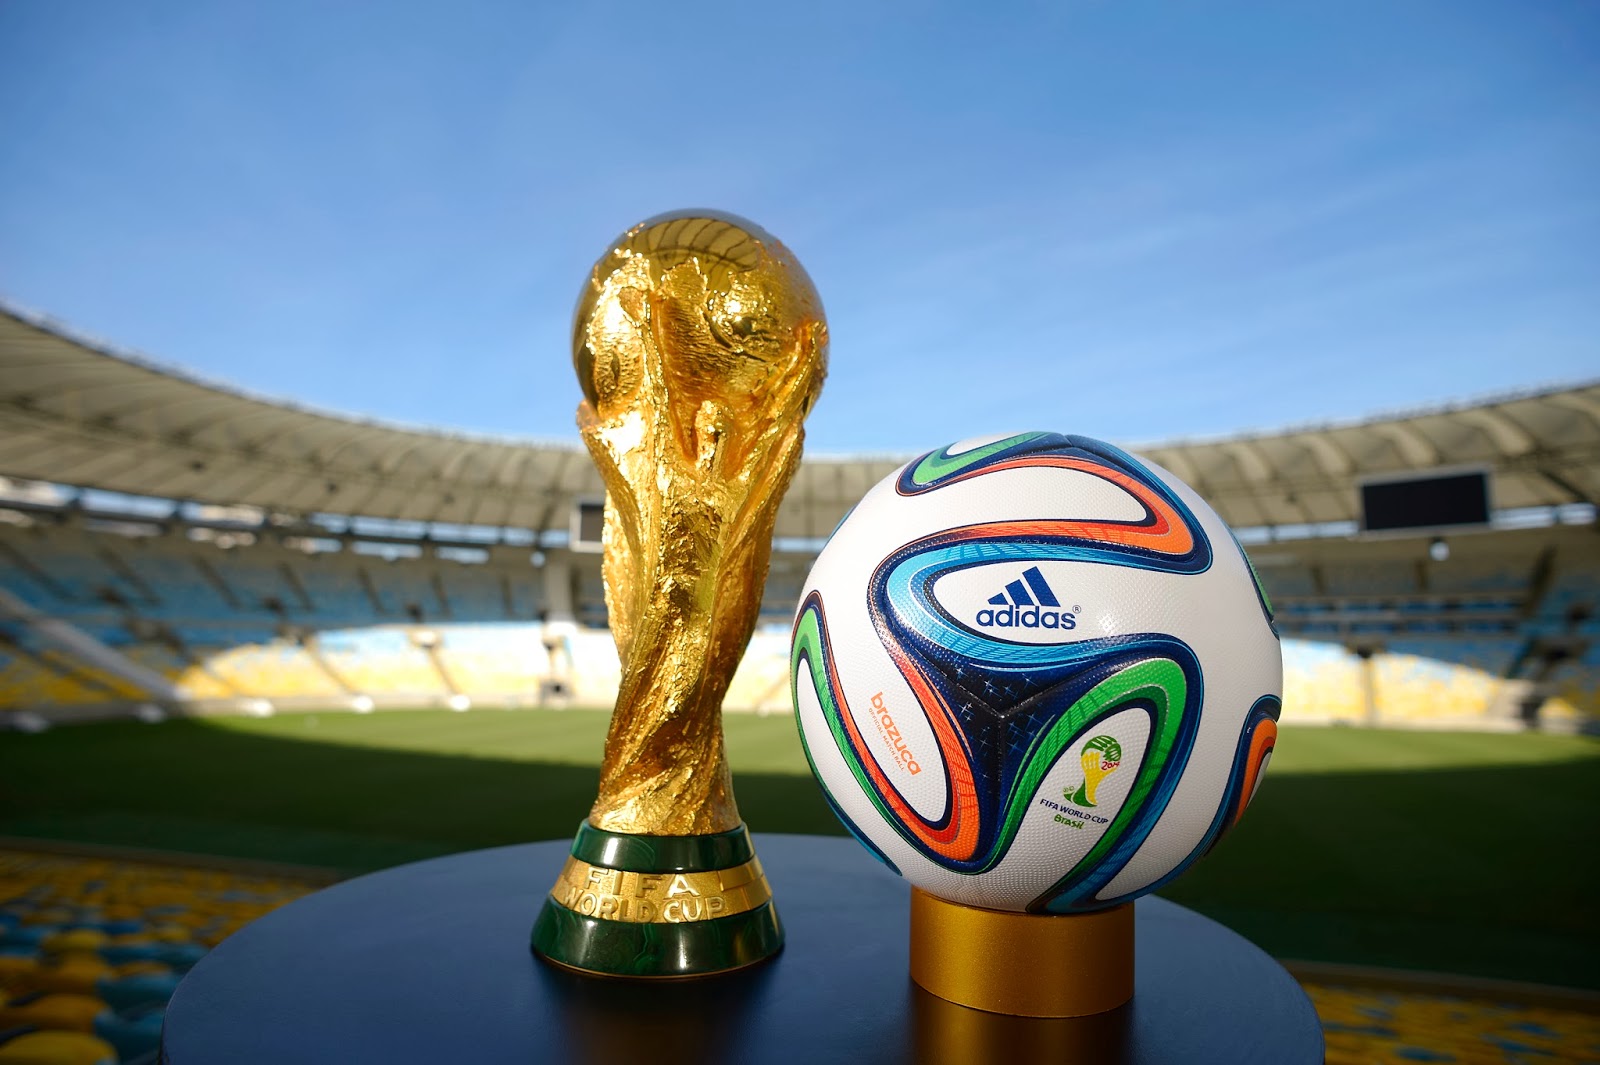 韓國領先2022世界杯投注預選賽